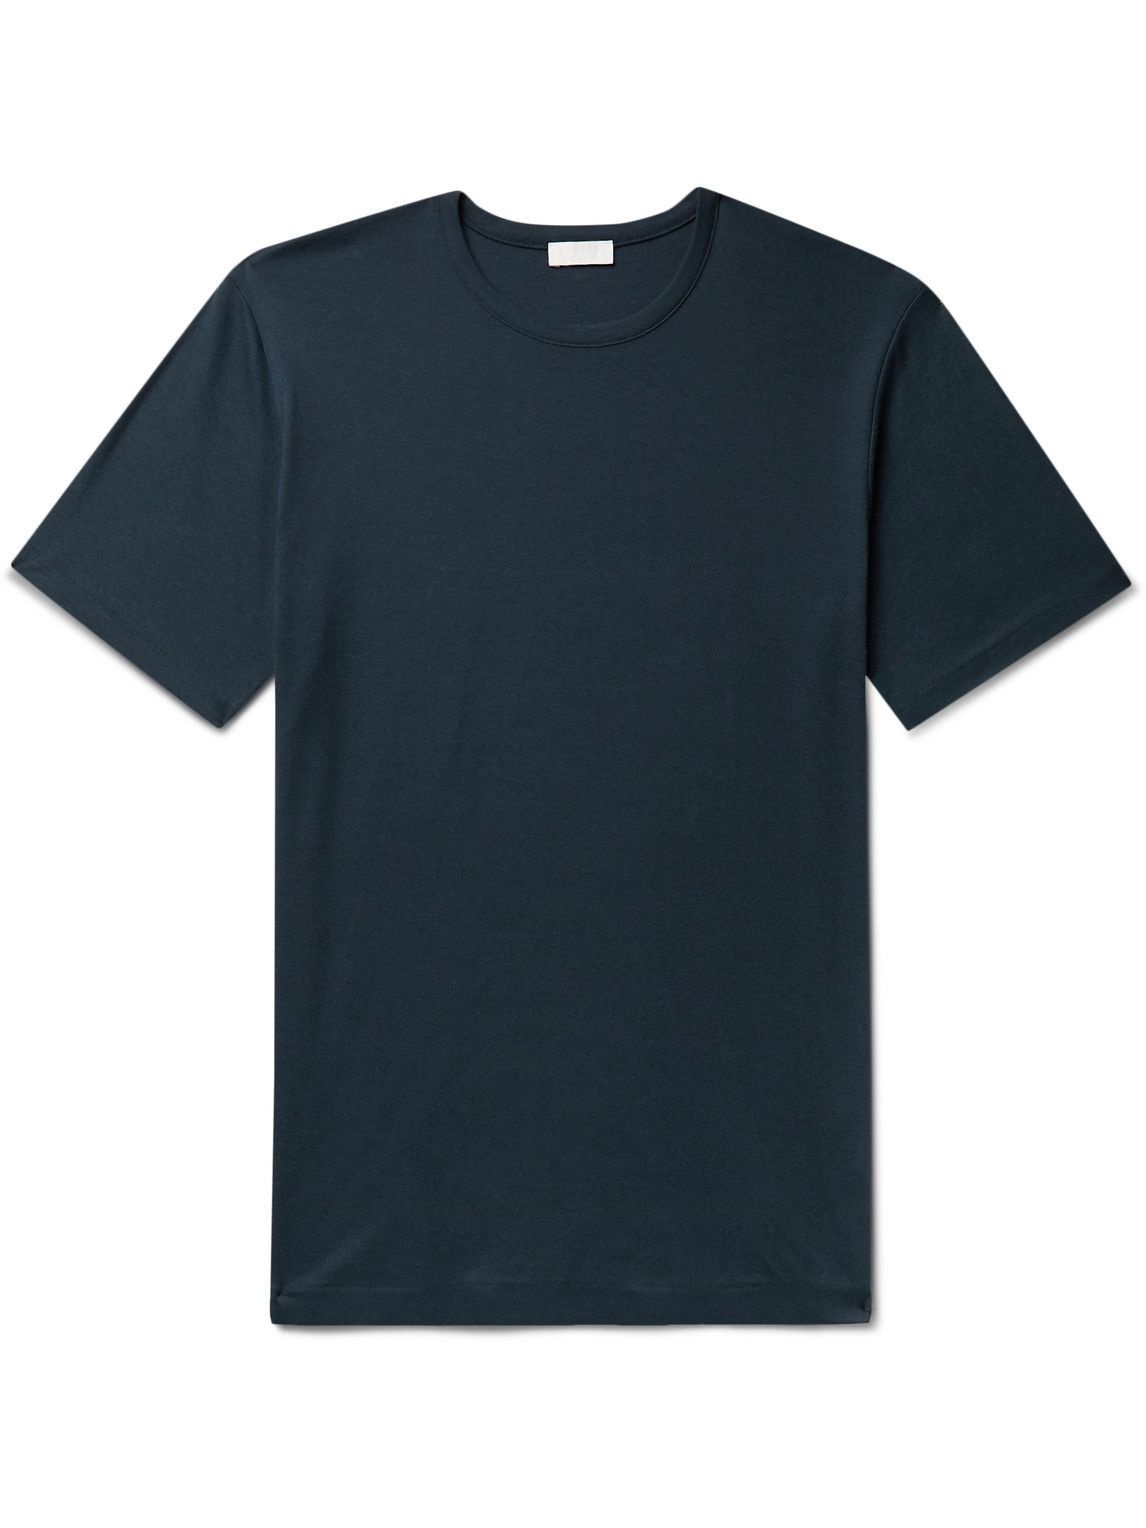 Sunspel - Sea Island Cotton-Jersey T-Shirt - Blue Sunspel